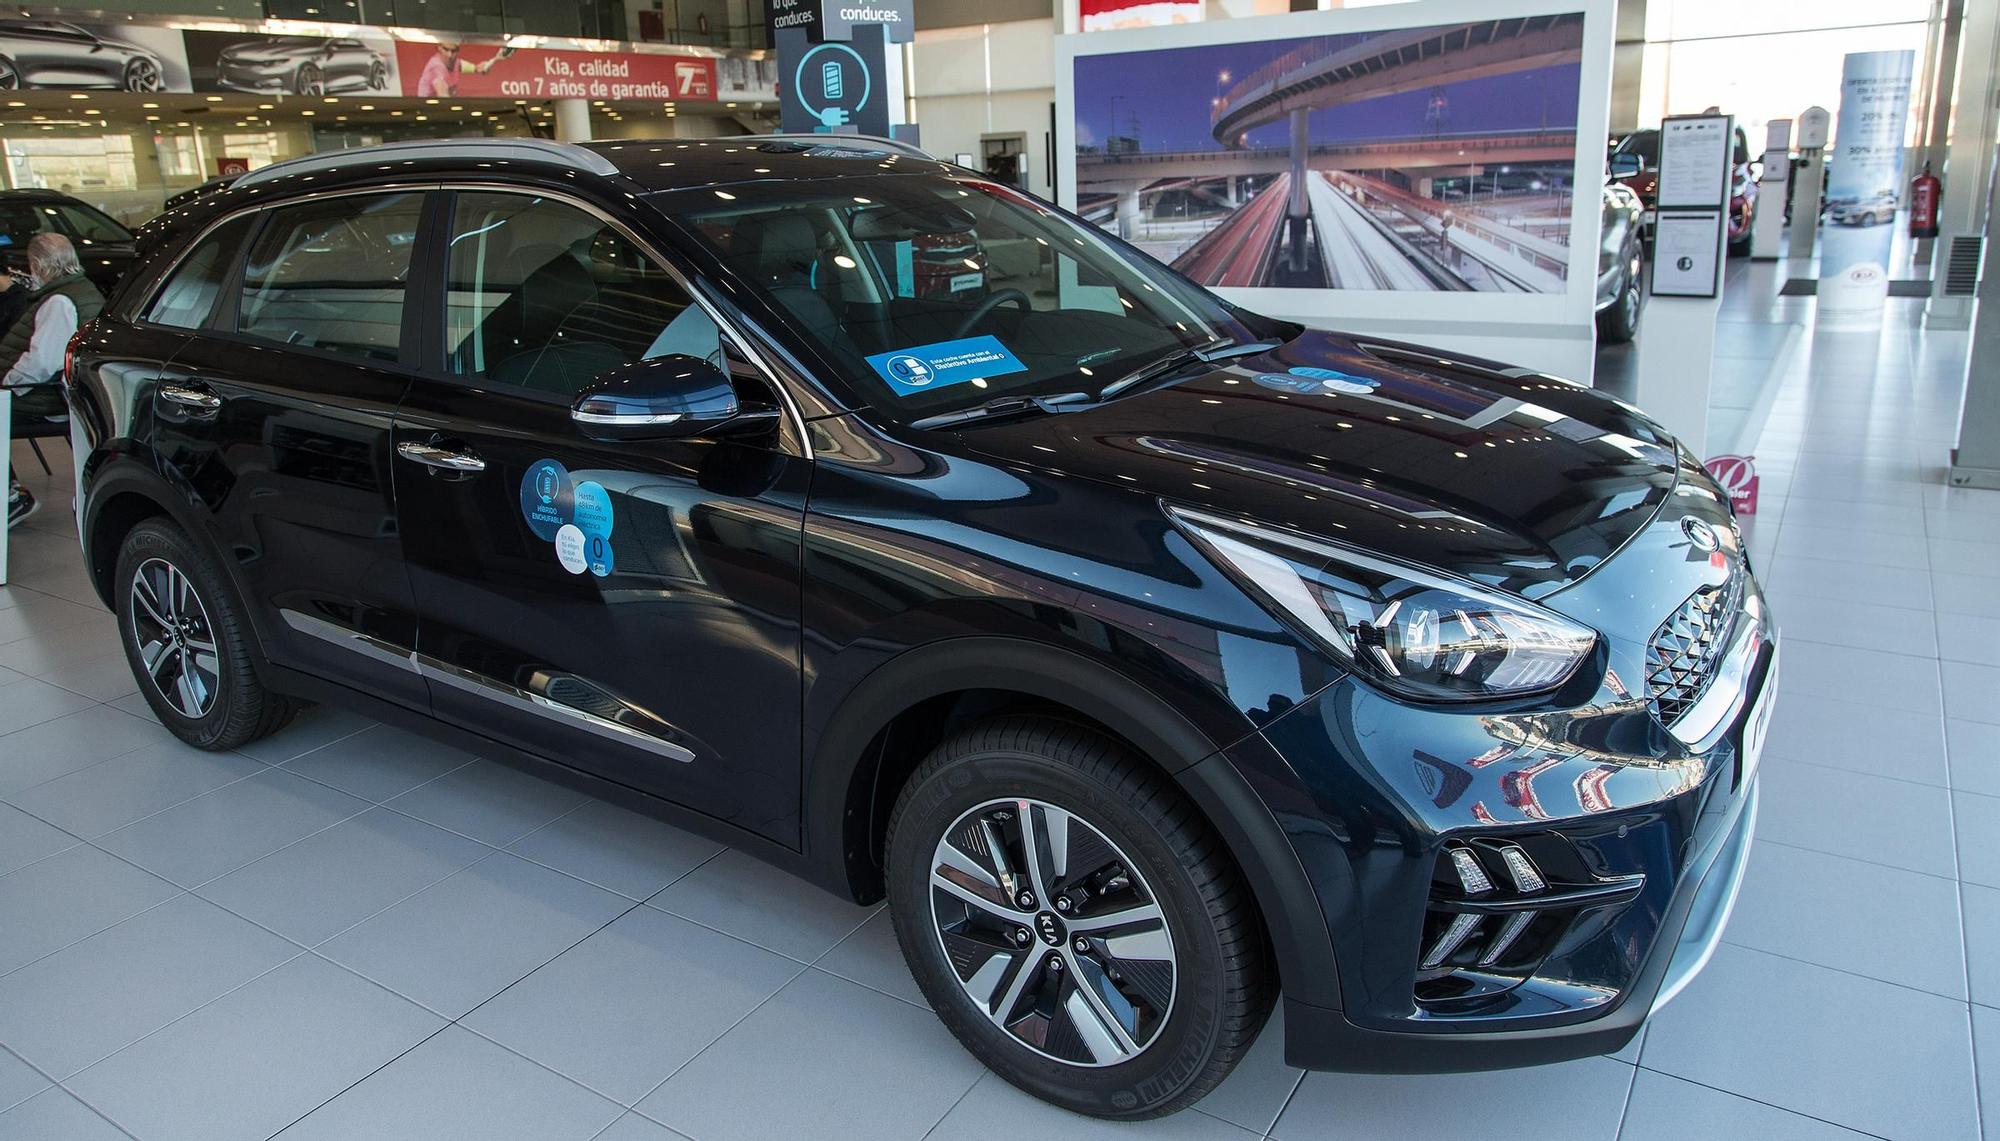 KIA NIRO: Nueva promoción de KIA Renting para coches híbridos y eléctricos en Alicante